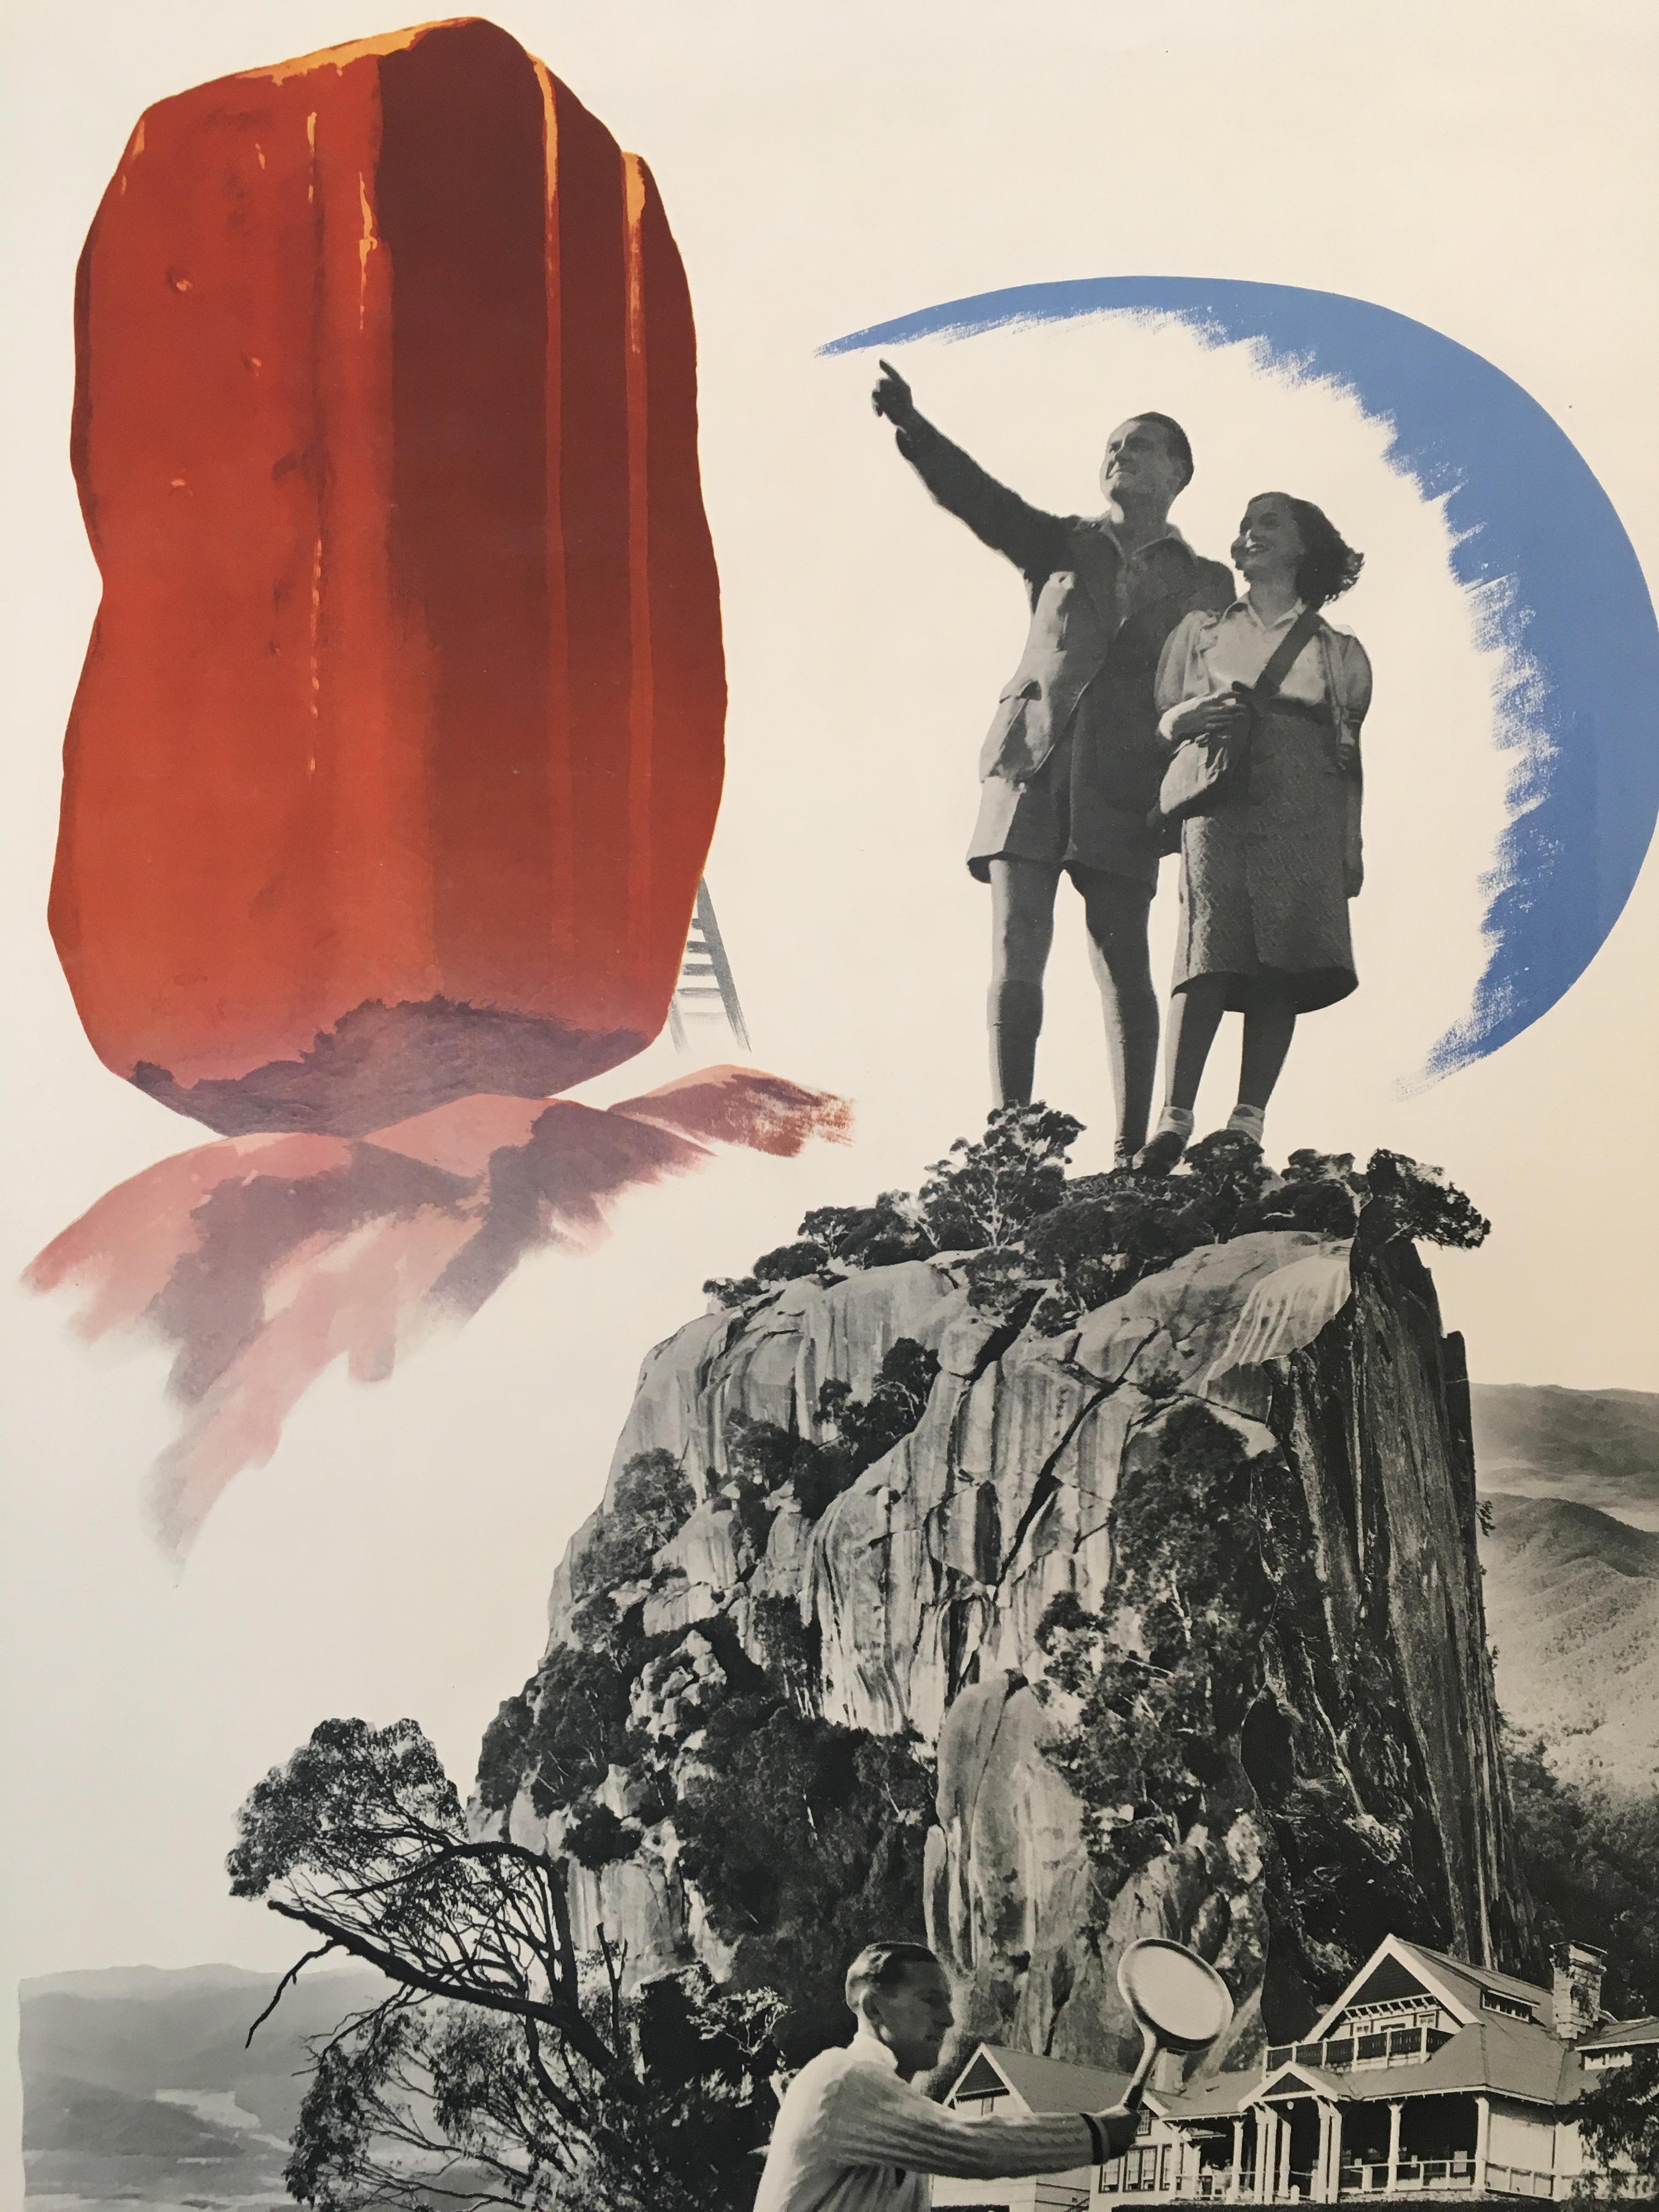 'Mt. Buffalo', Australia, 1939, original lithograph poster by Gert Sellheim

